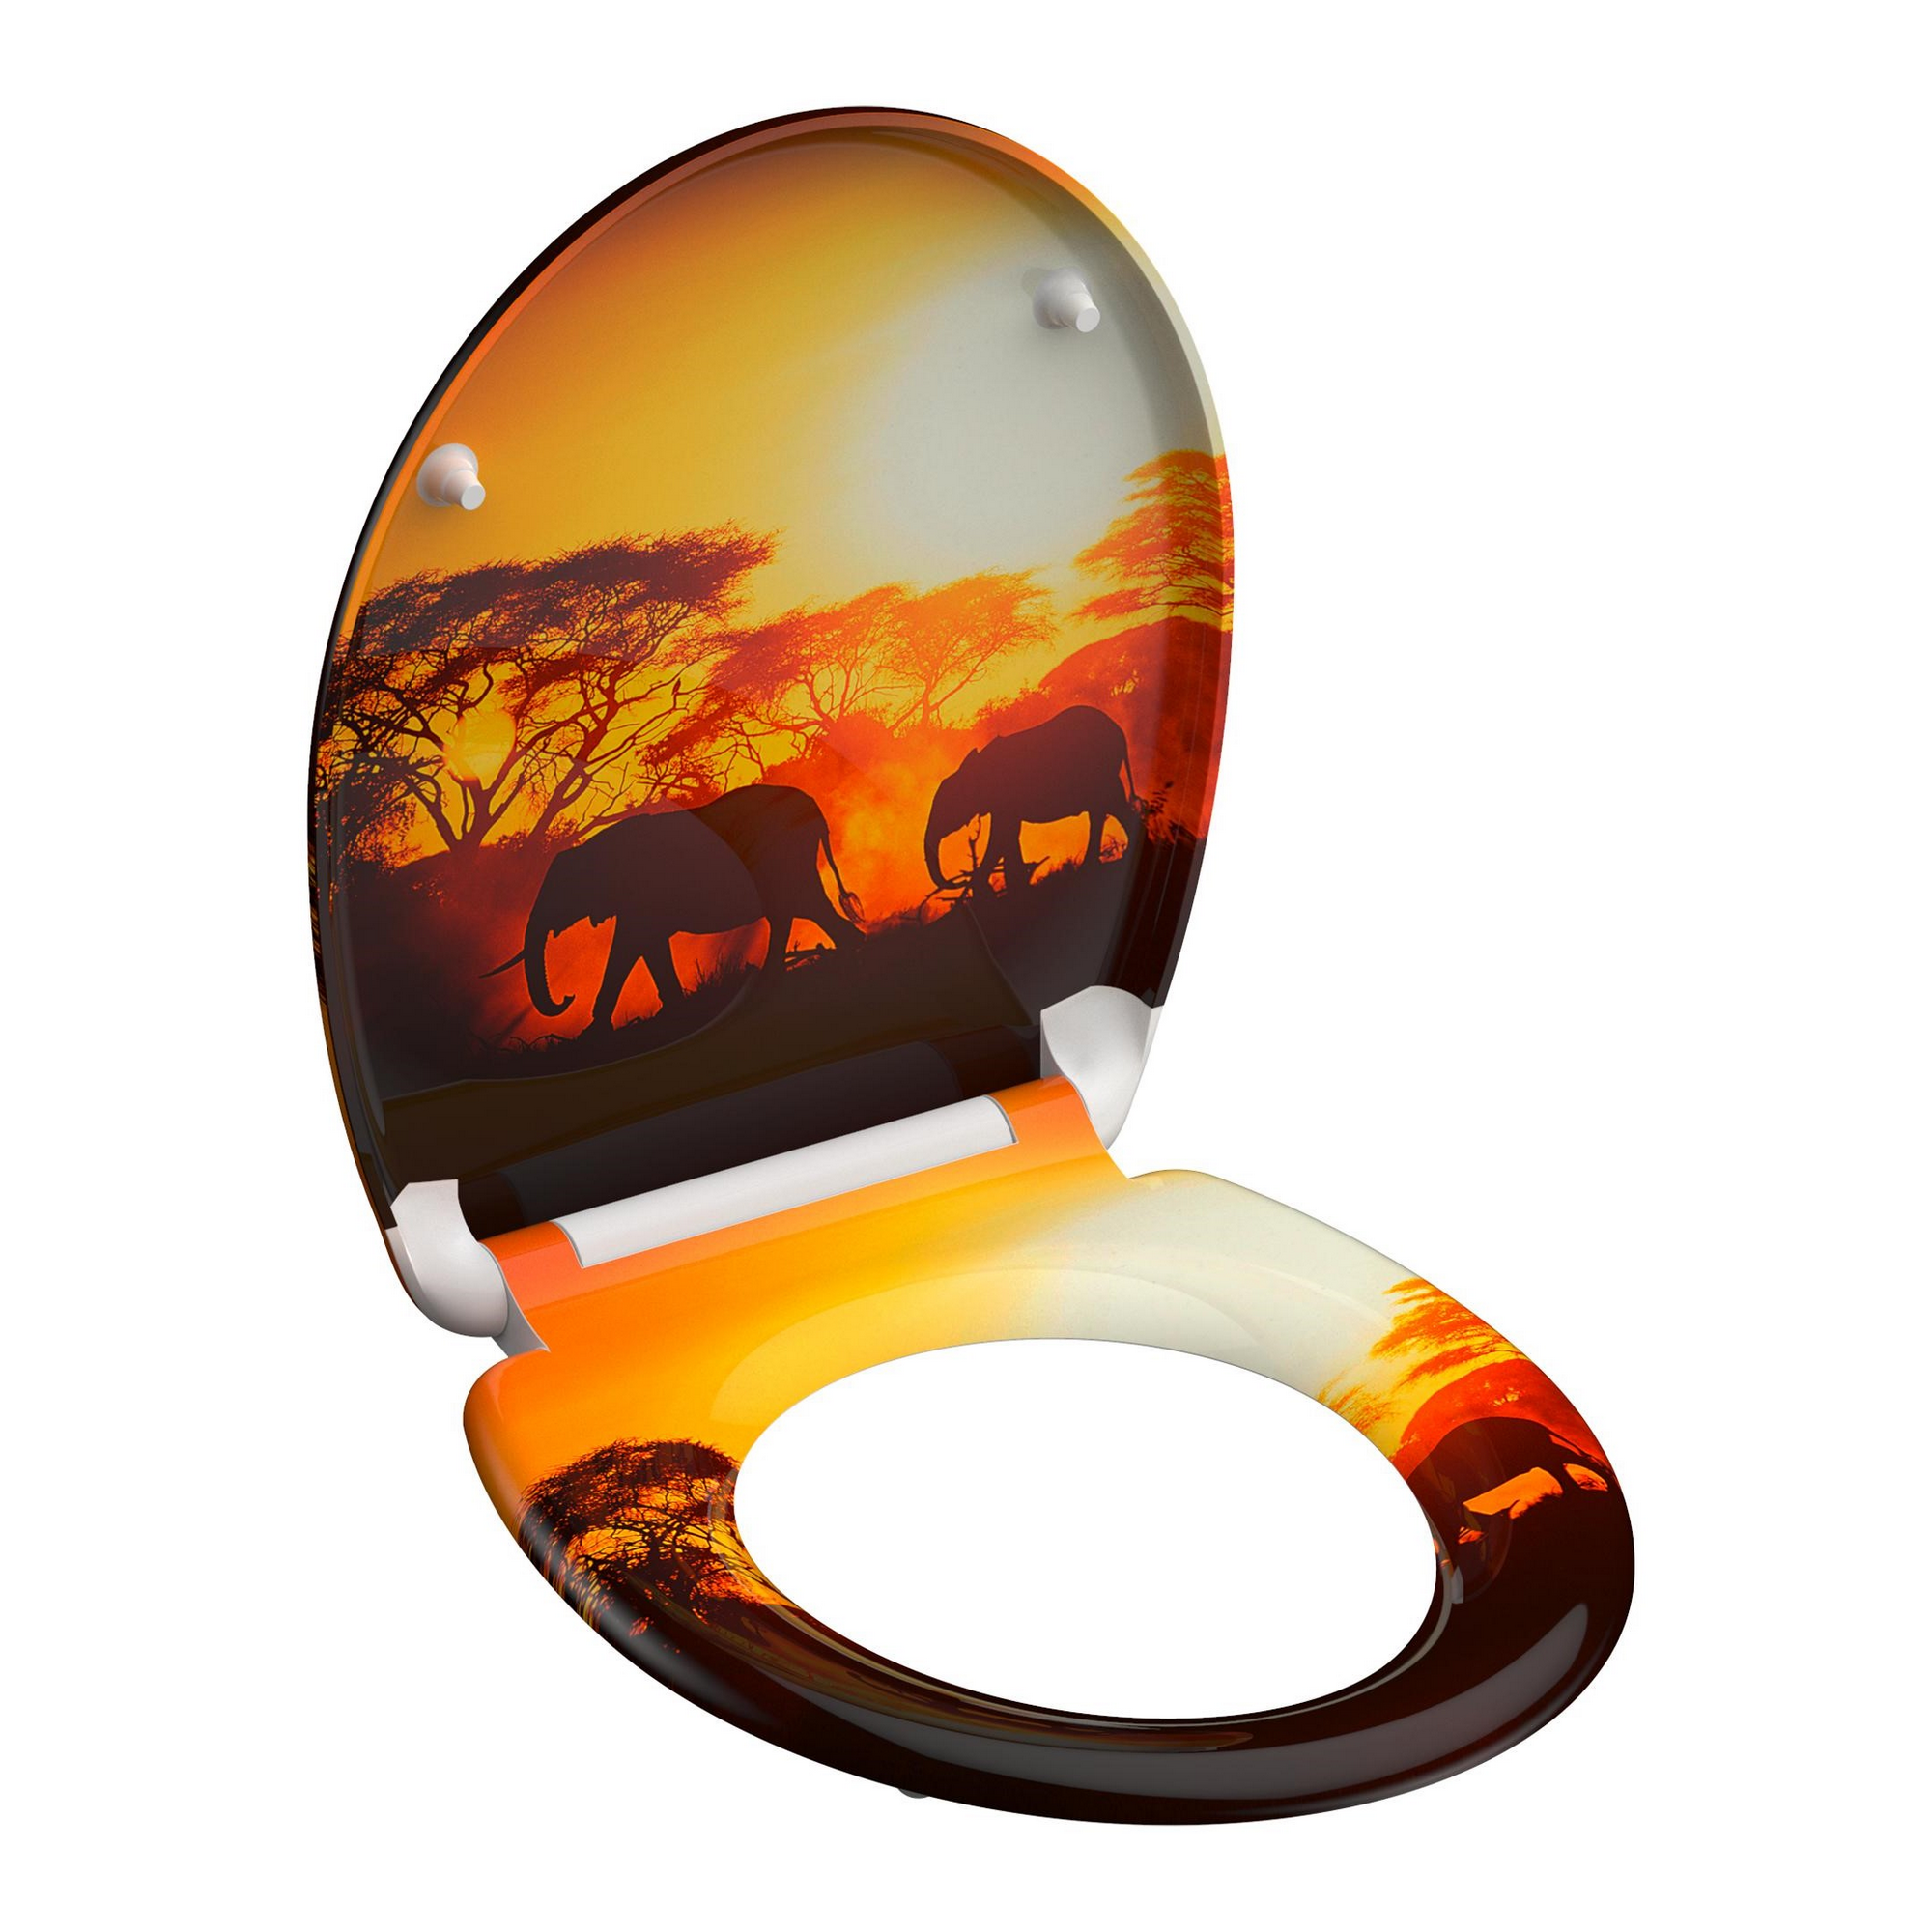 WC-Sitz 'Africa' mit Absenkautomatik orange/schwarz 37,5 x 45 cm + product picture